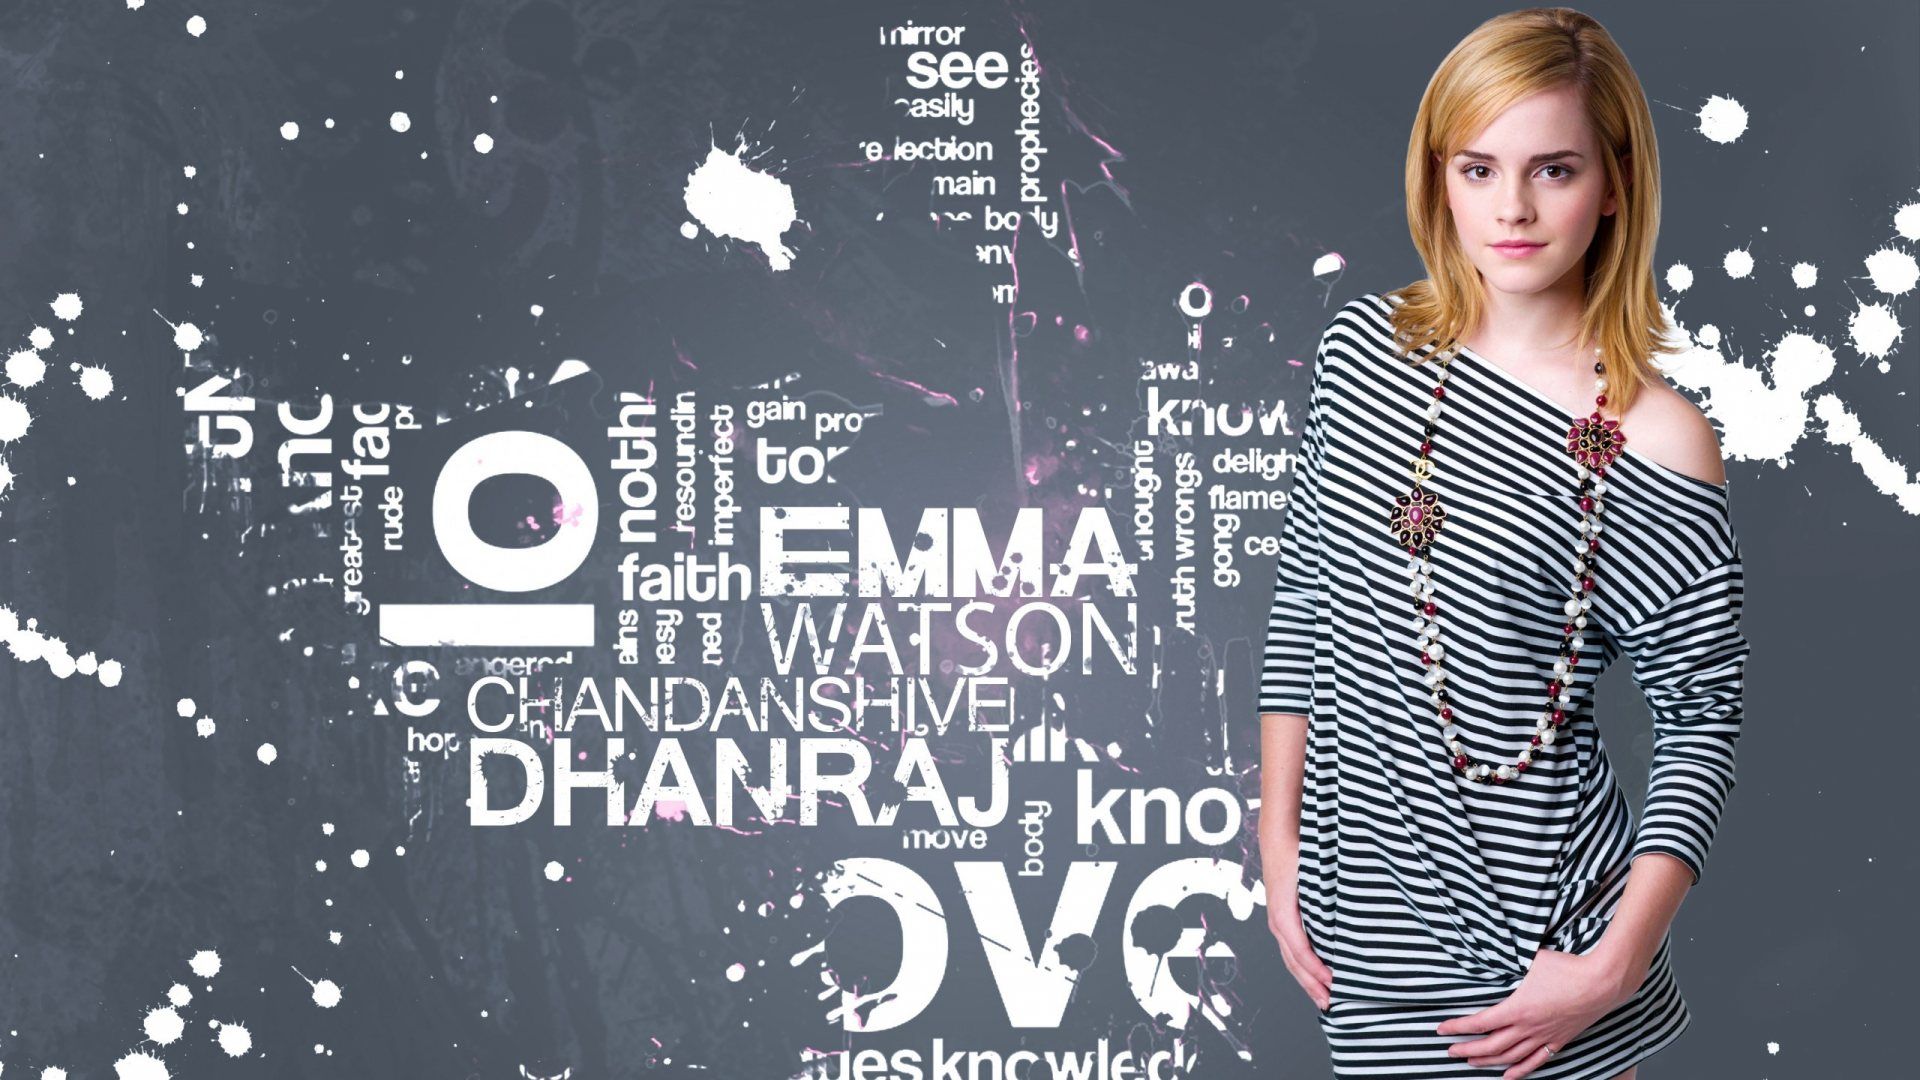 Emma Watson Hd Wallpapers For Laptop - HD Wallpaper 